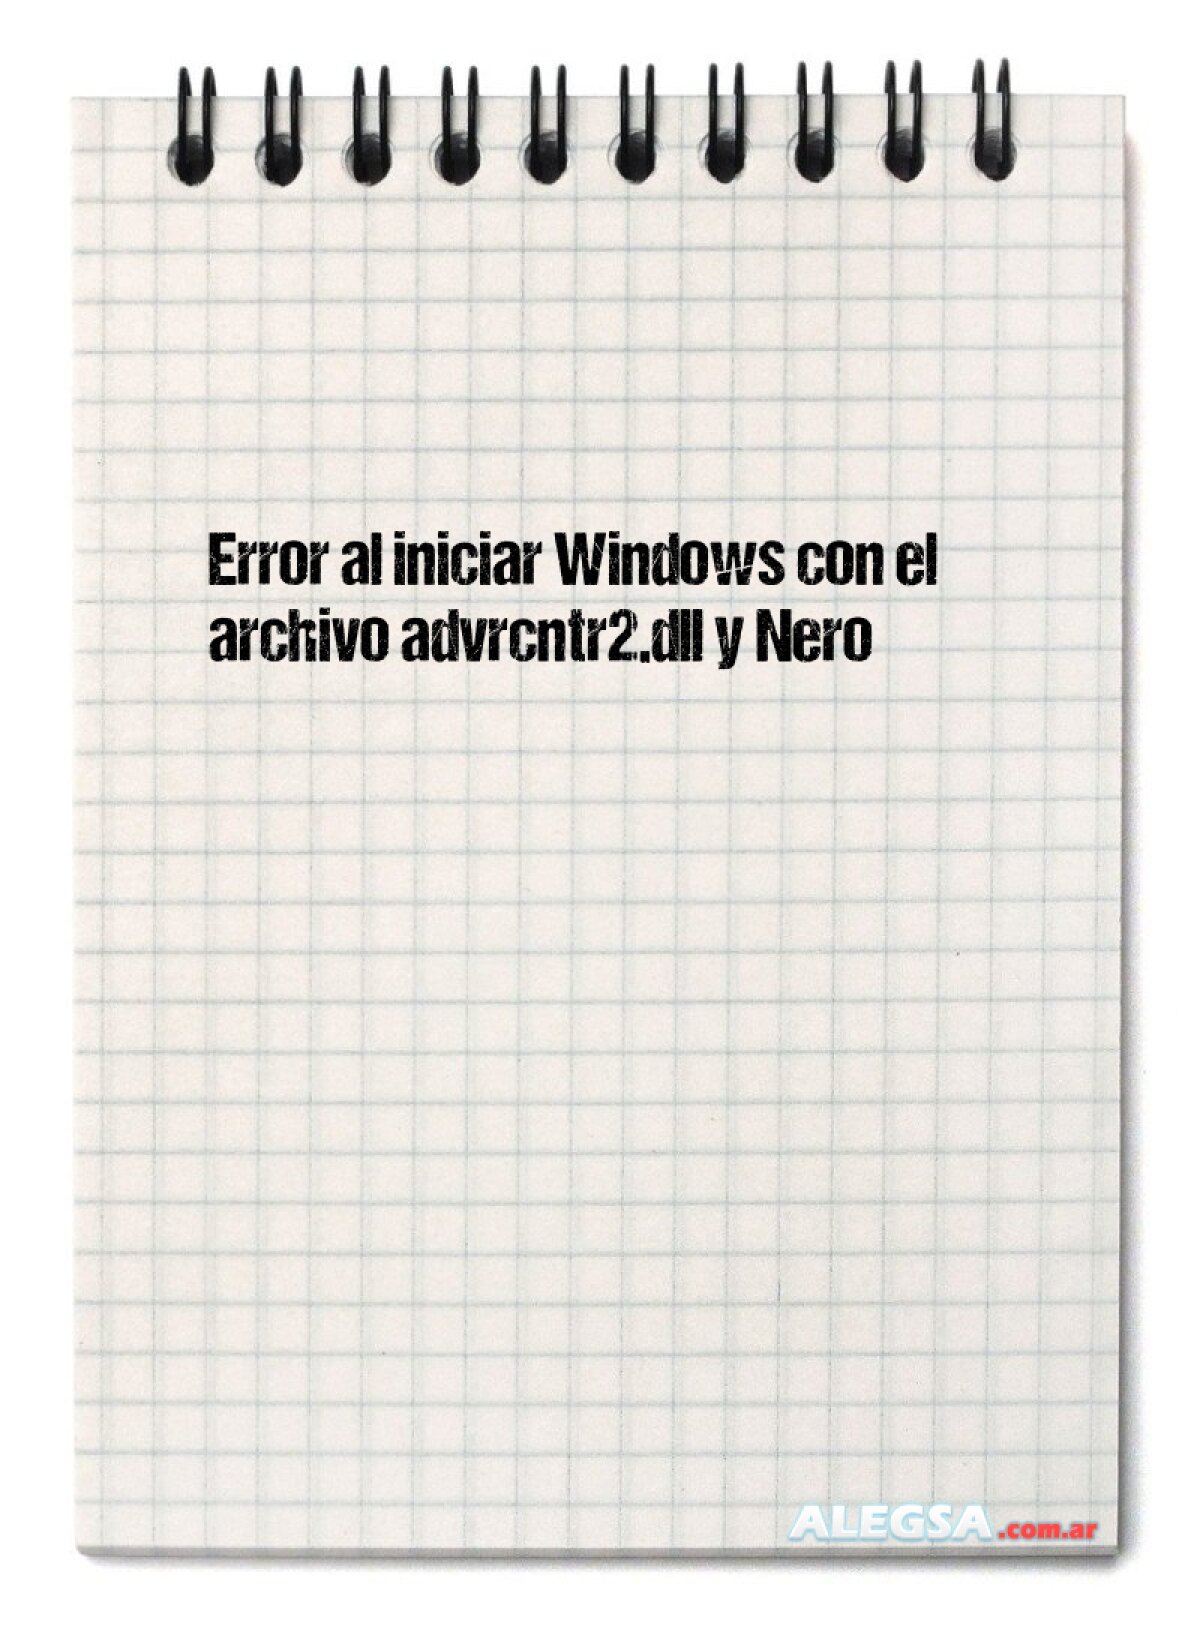 Error al iniciar Windows con el archivo advrcntr2.dll y Nero